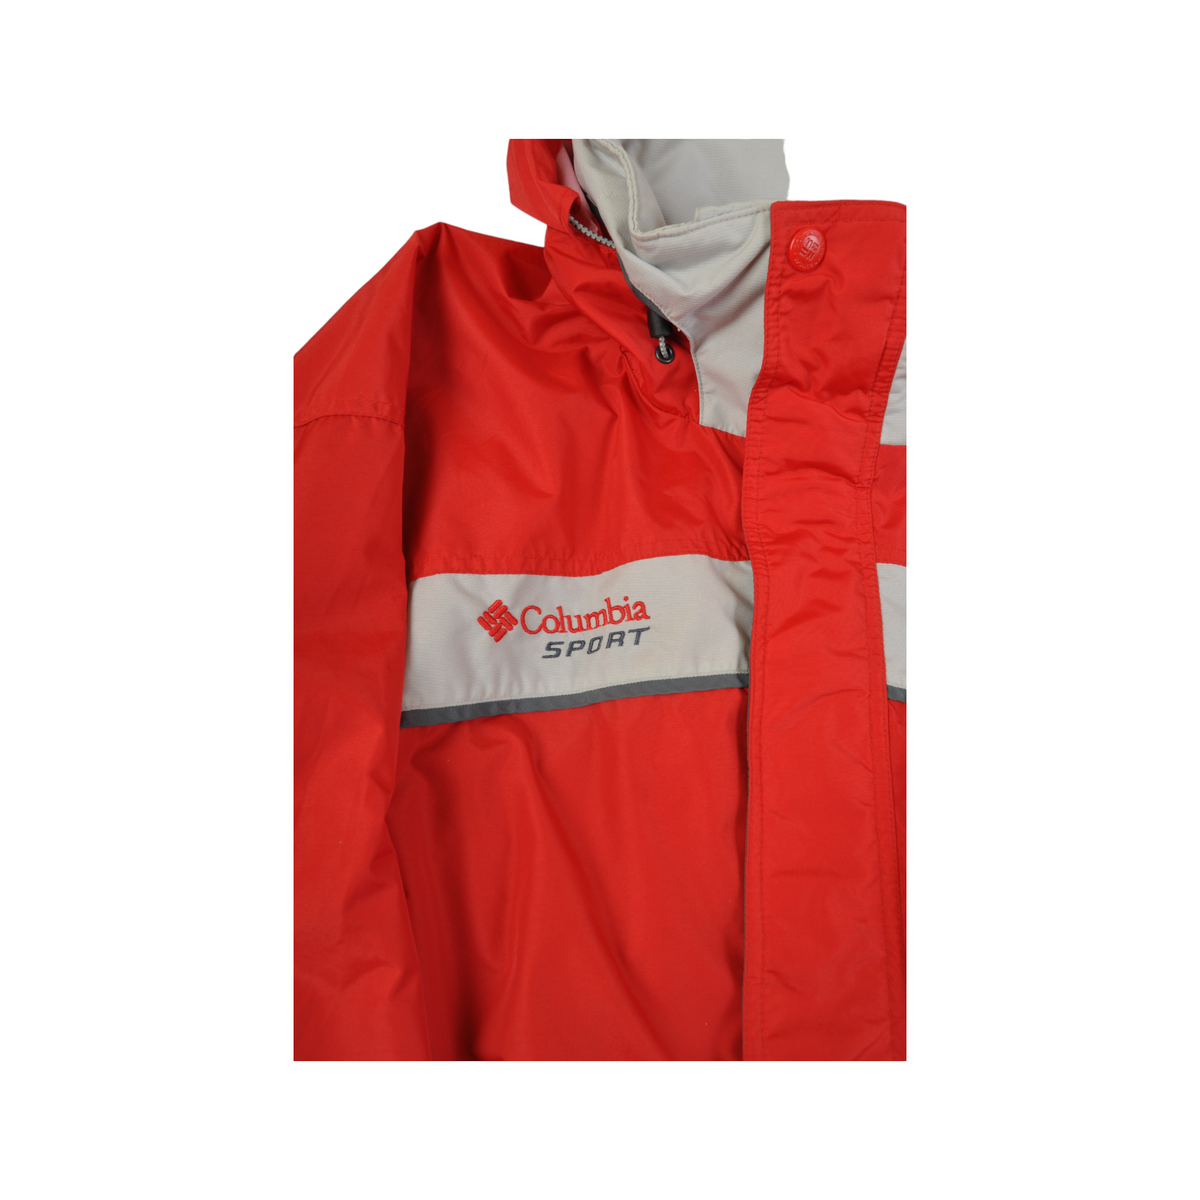 Vintage Columbia Ski Jacket Waterproof Red XL - Cloak Vintage